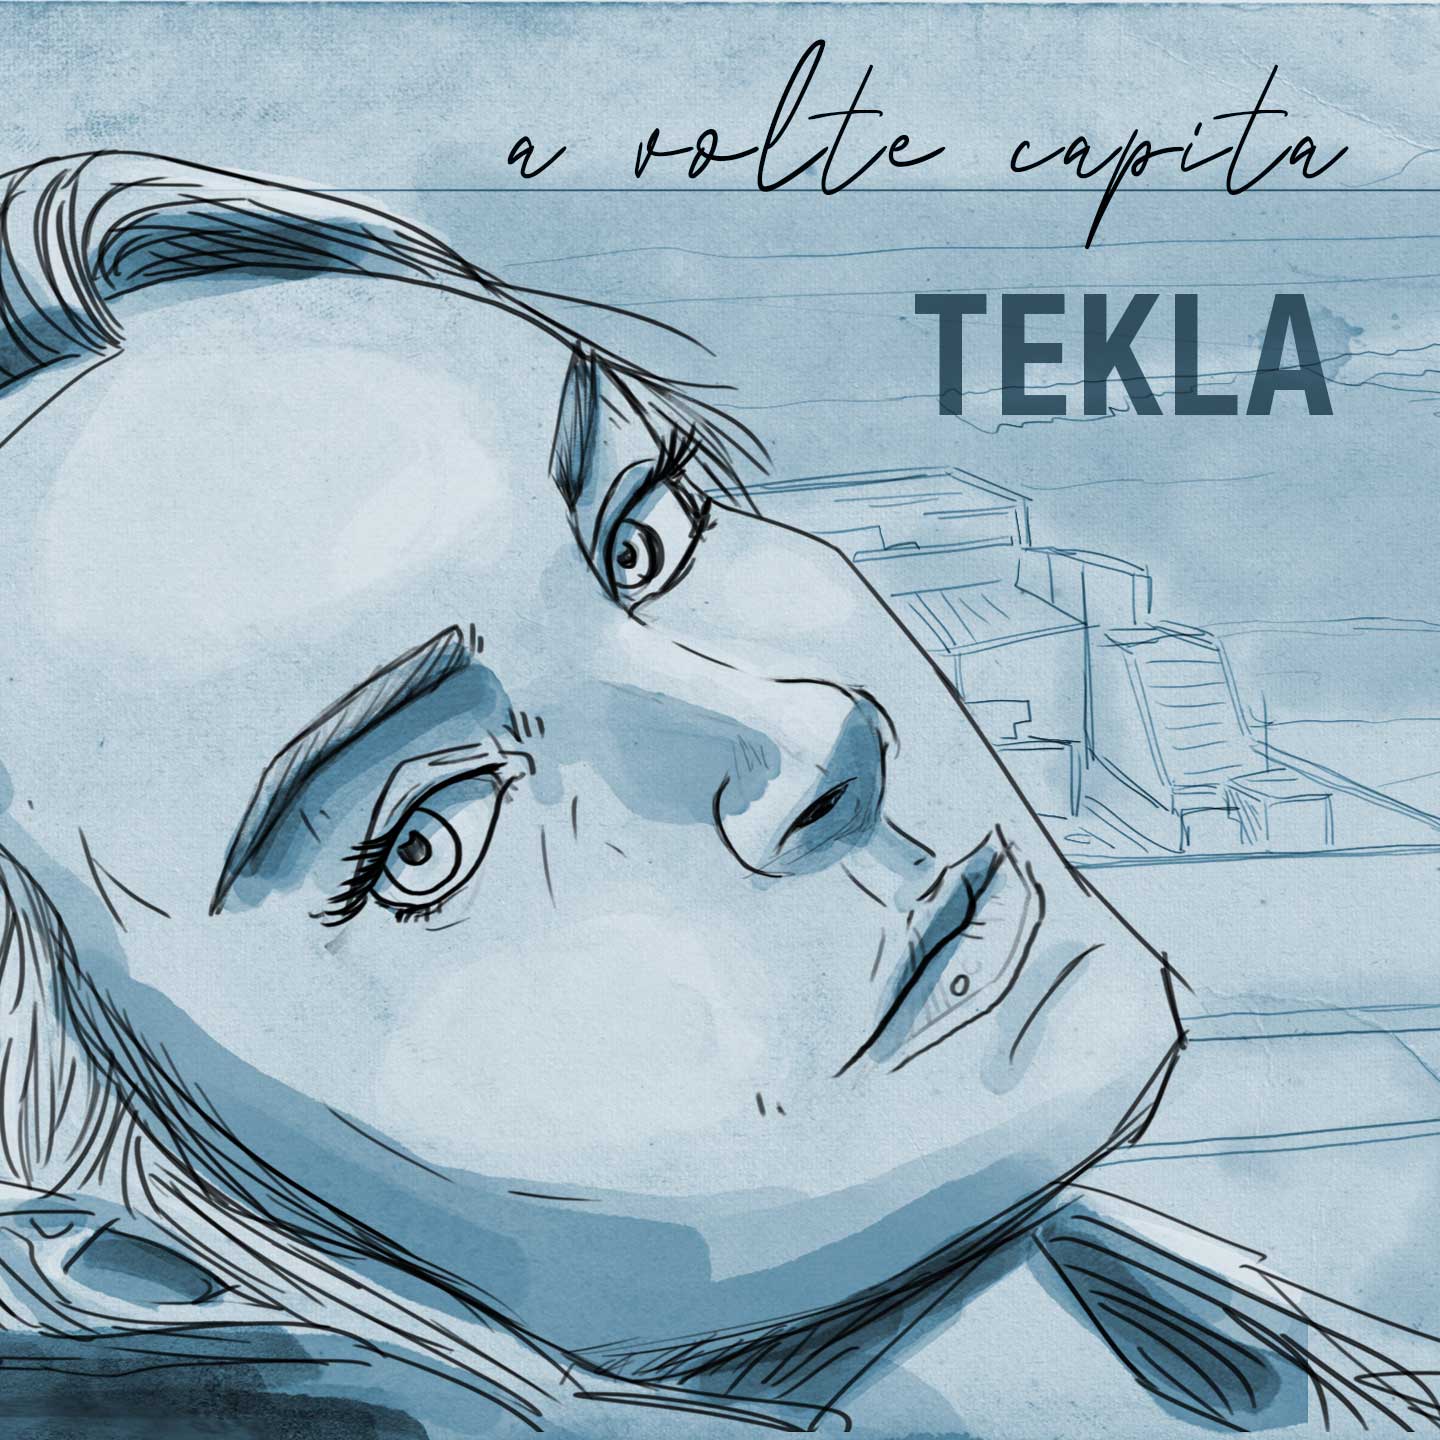 Al momento stai visualizzando Tekla: esce in radio il nuovo singolo “A volte capita”